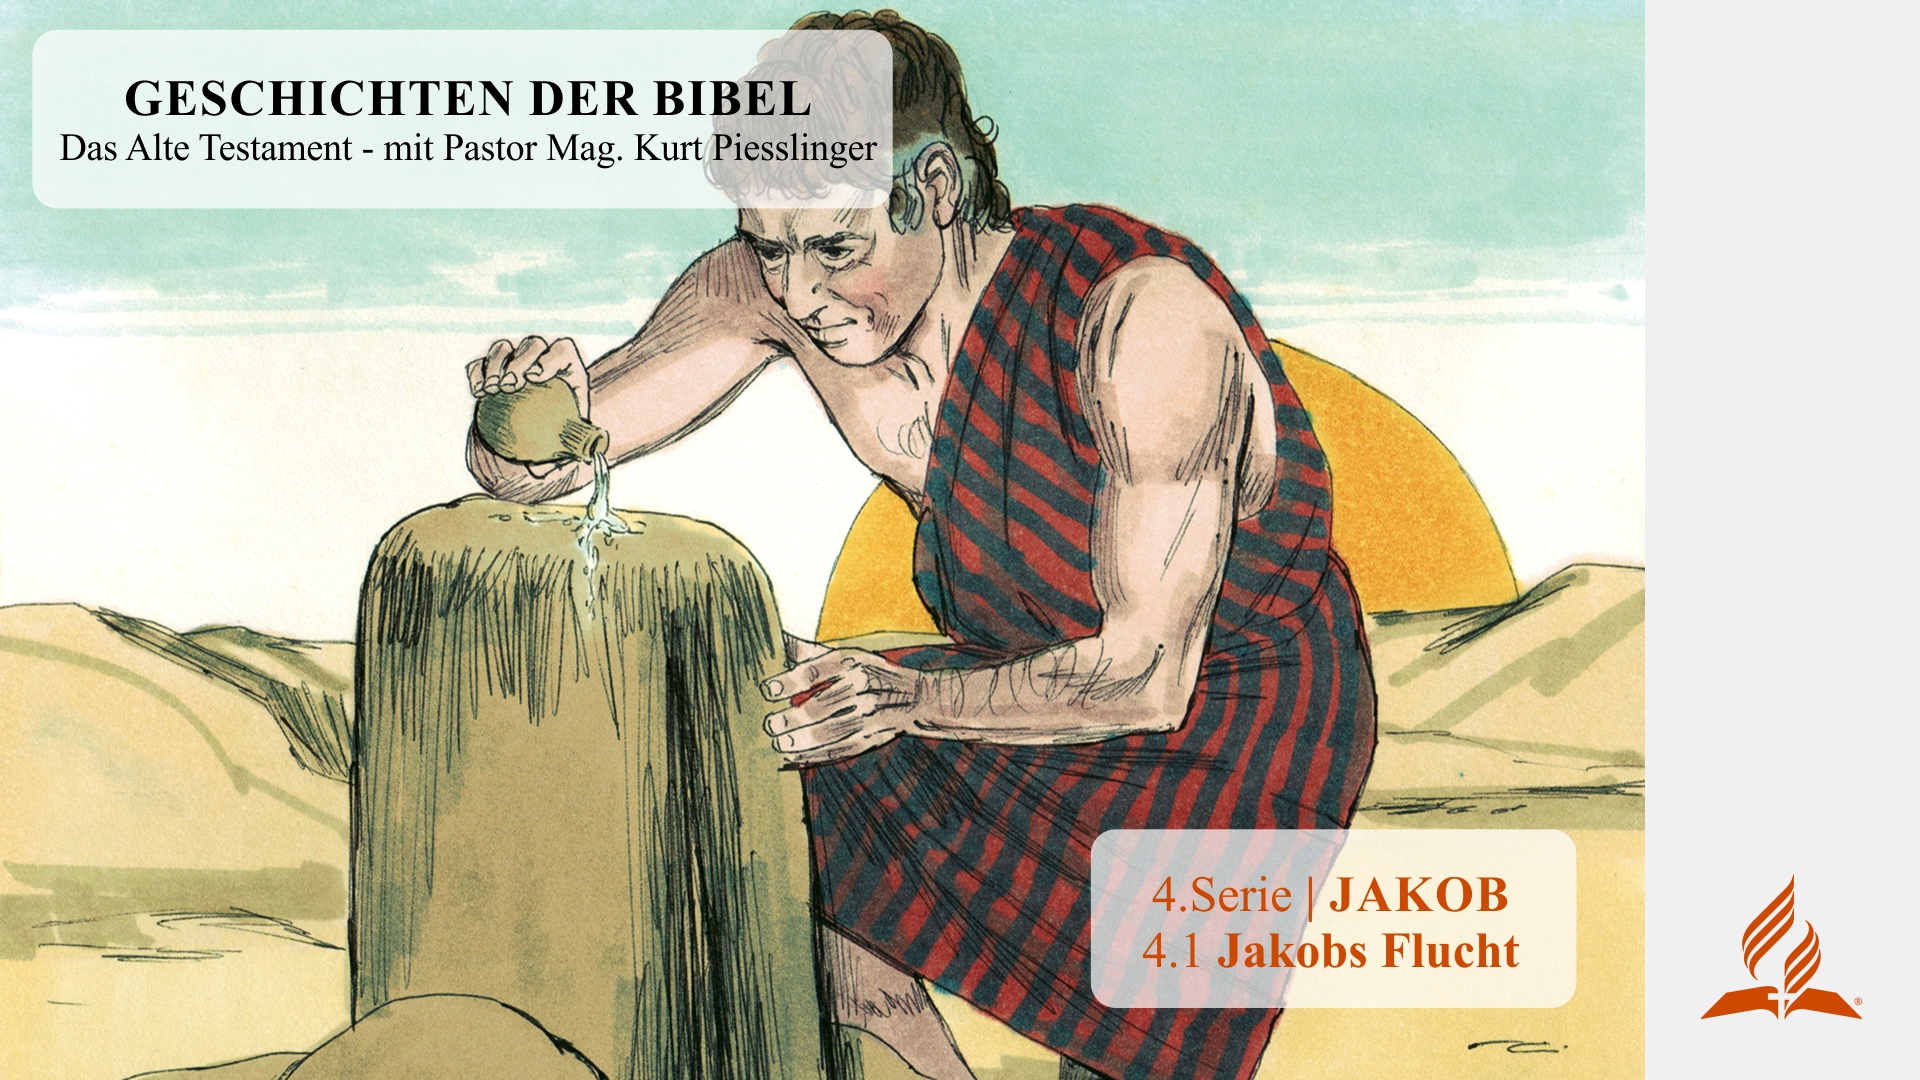 GESCHICHTEN DER BIBEL: 4.1 Jakobs Flucht – 4.JAKOB | Pastor Mag. Kurt Piesslinger